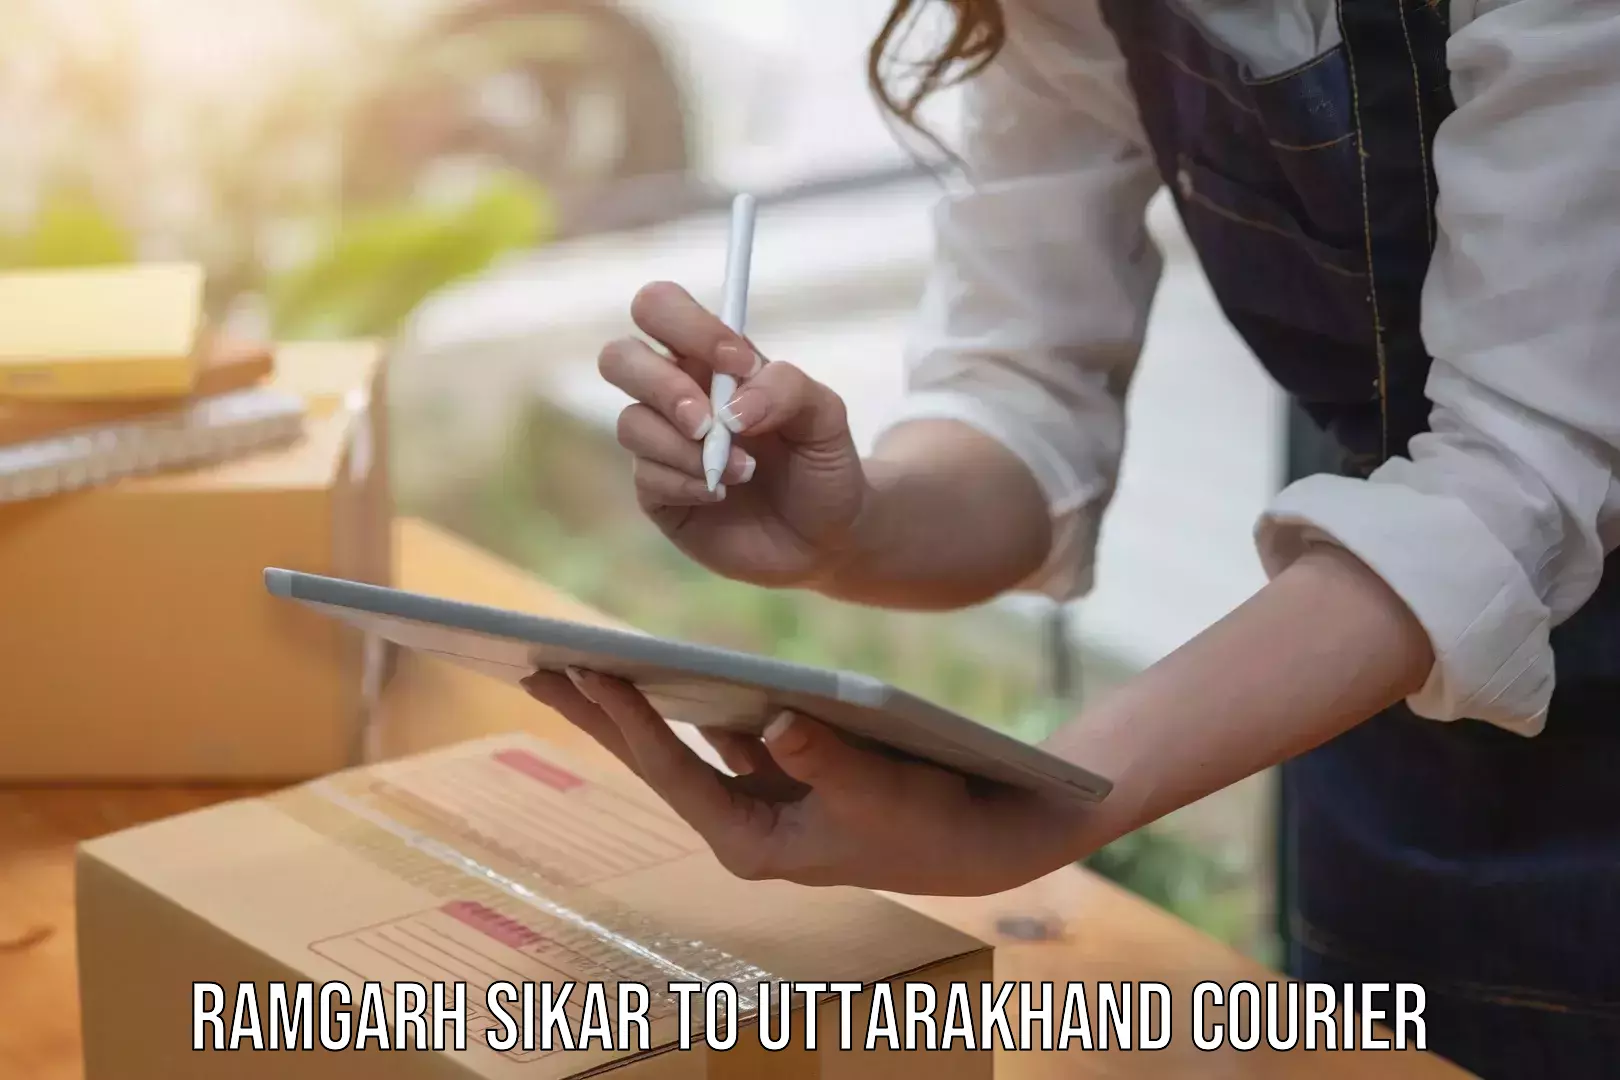 Versatile courier offerings Ramgarh Sikar to Uttarakhand